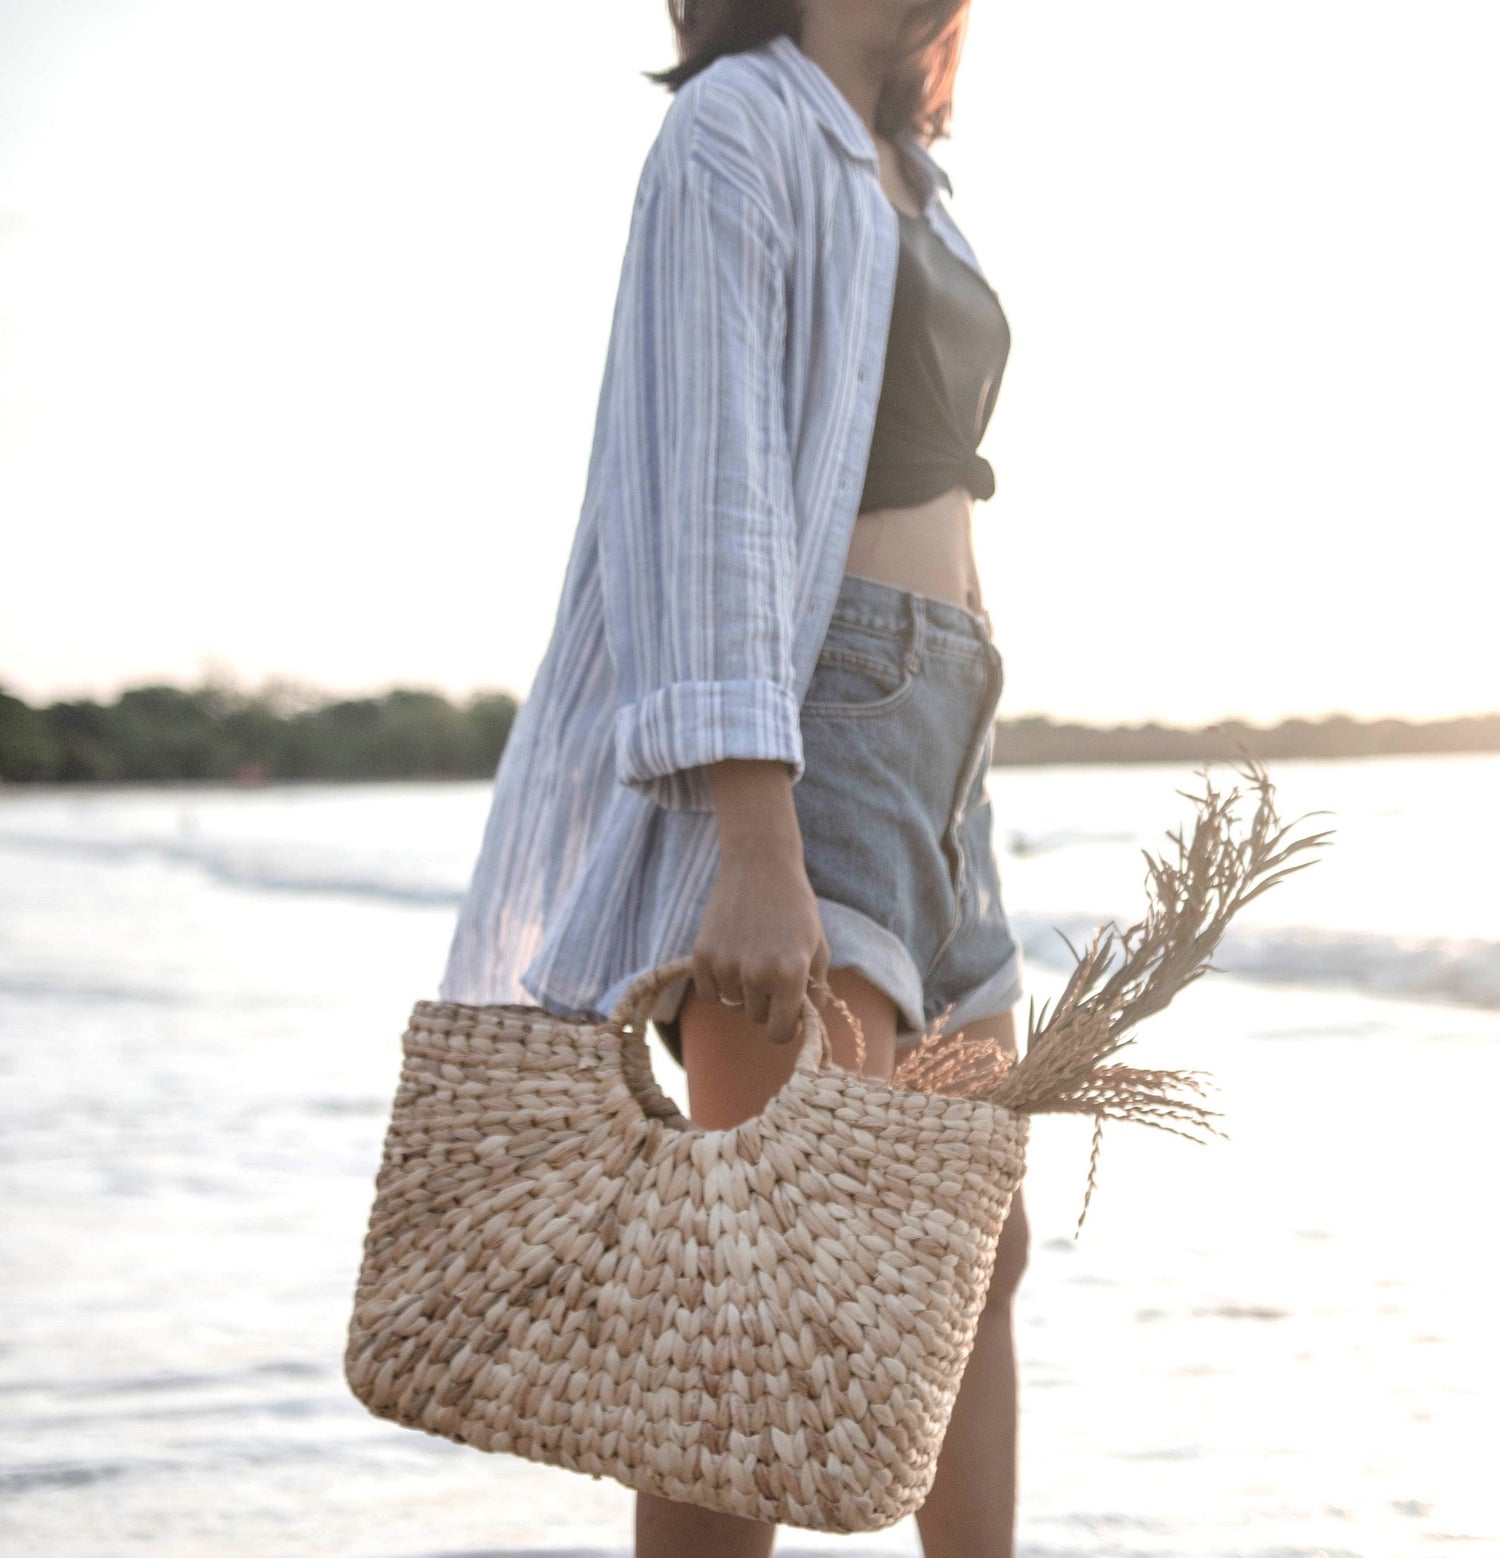 Woven Summer Bag | Shopping Bag SAMBAS made of Water Hyacinth